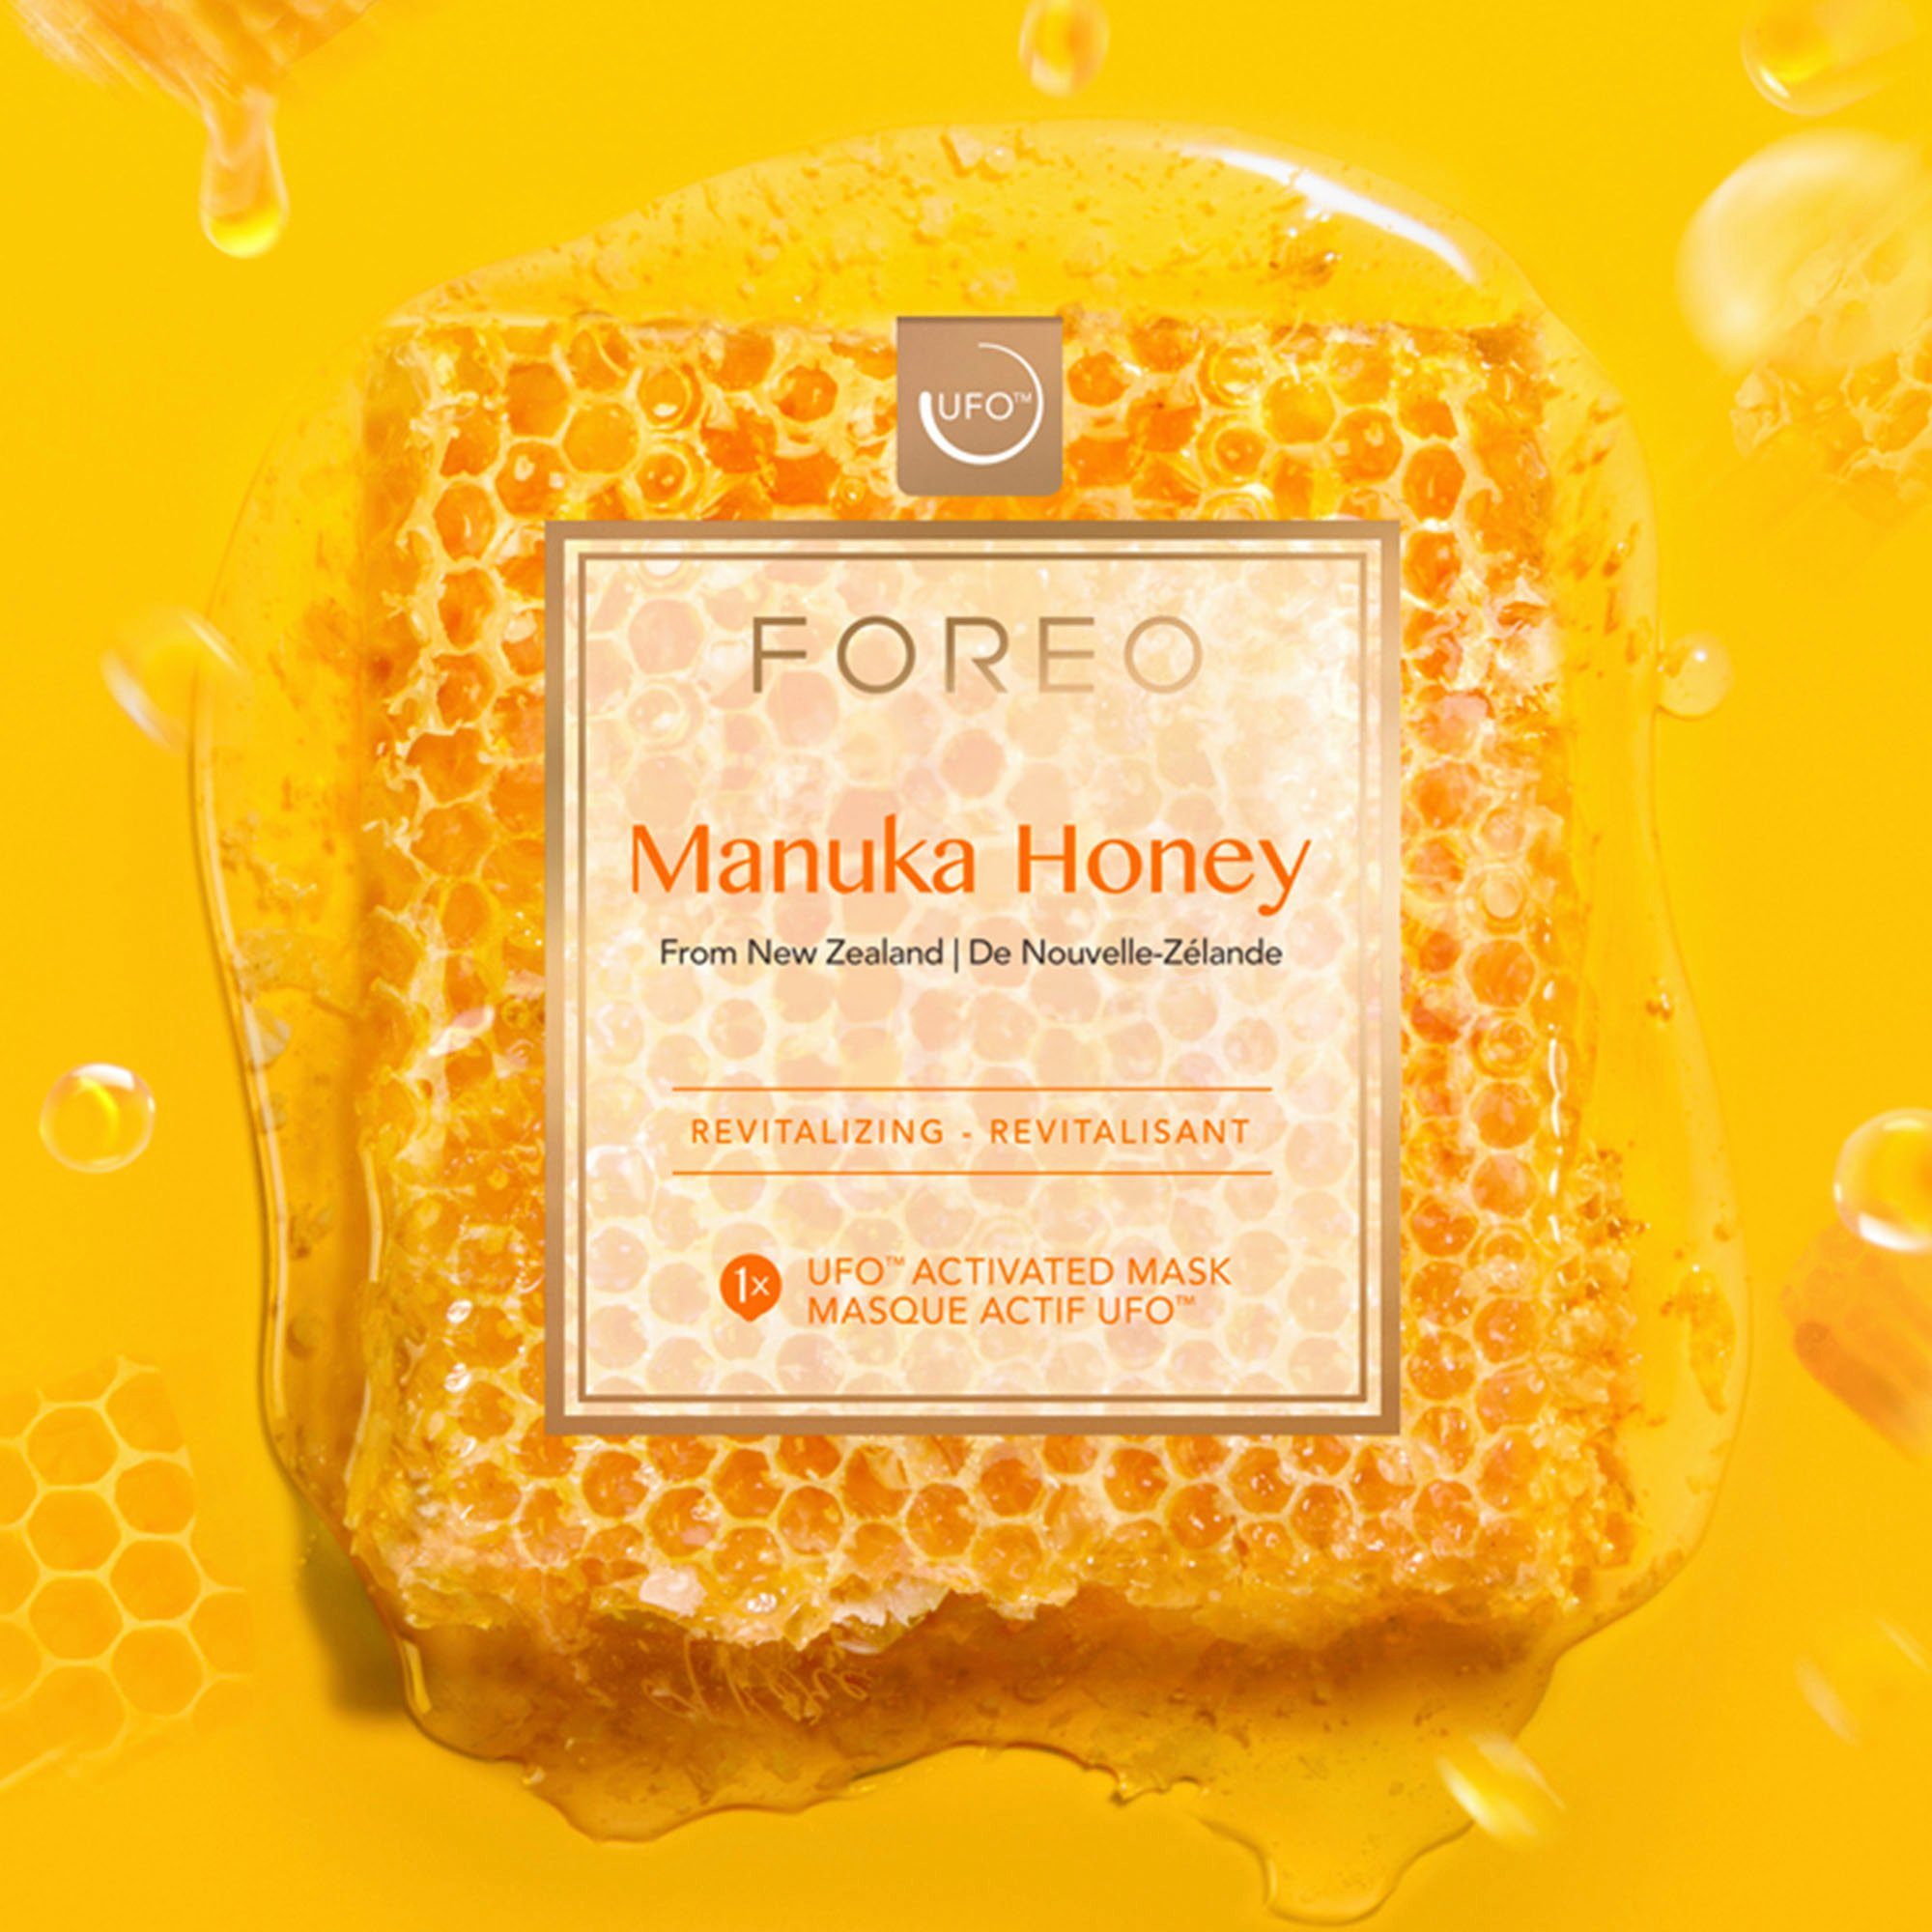 reife FOREO Haut ideal Set Manuka - Honey, Foreo Mask für UFO Gesichtsmaske Tagescreme Revitalisierende